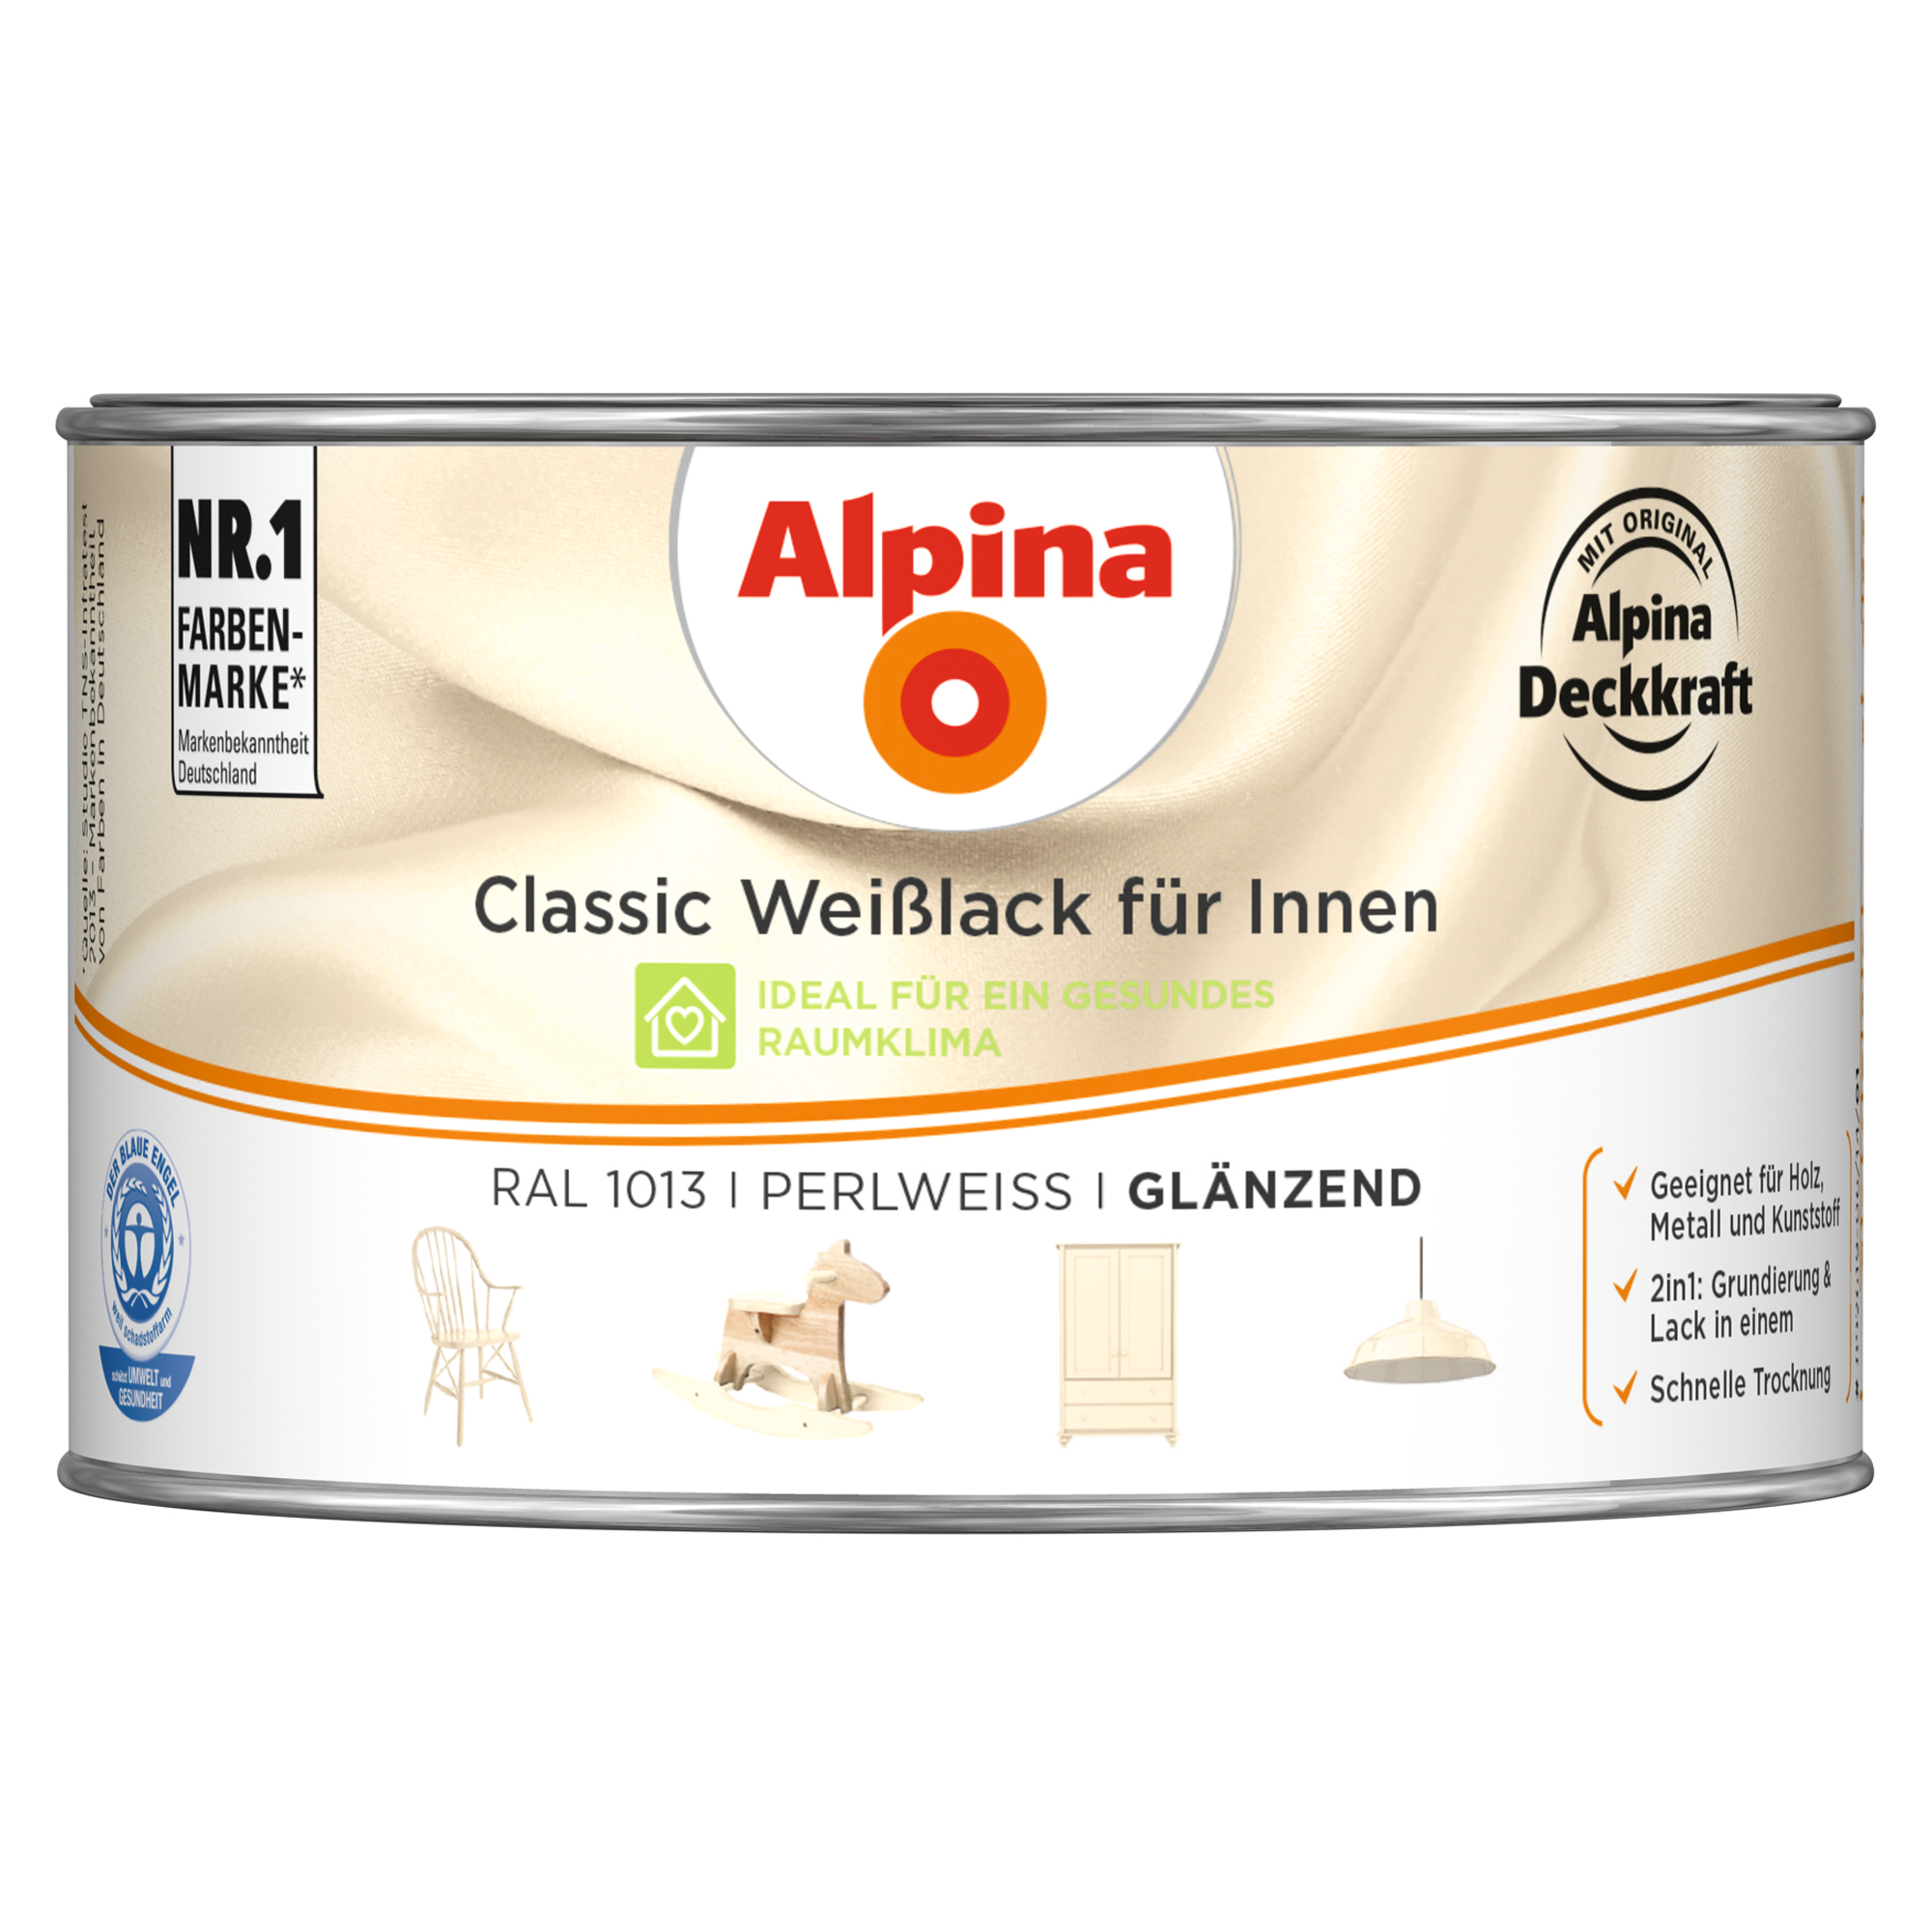 Weißlack für Innen perlweiß glänzend 300 ml + product picture